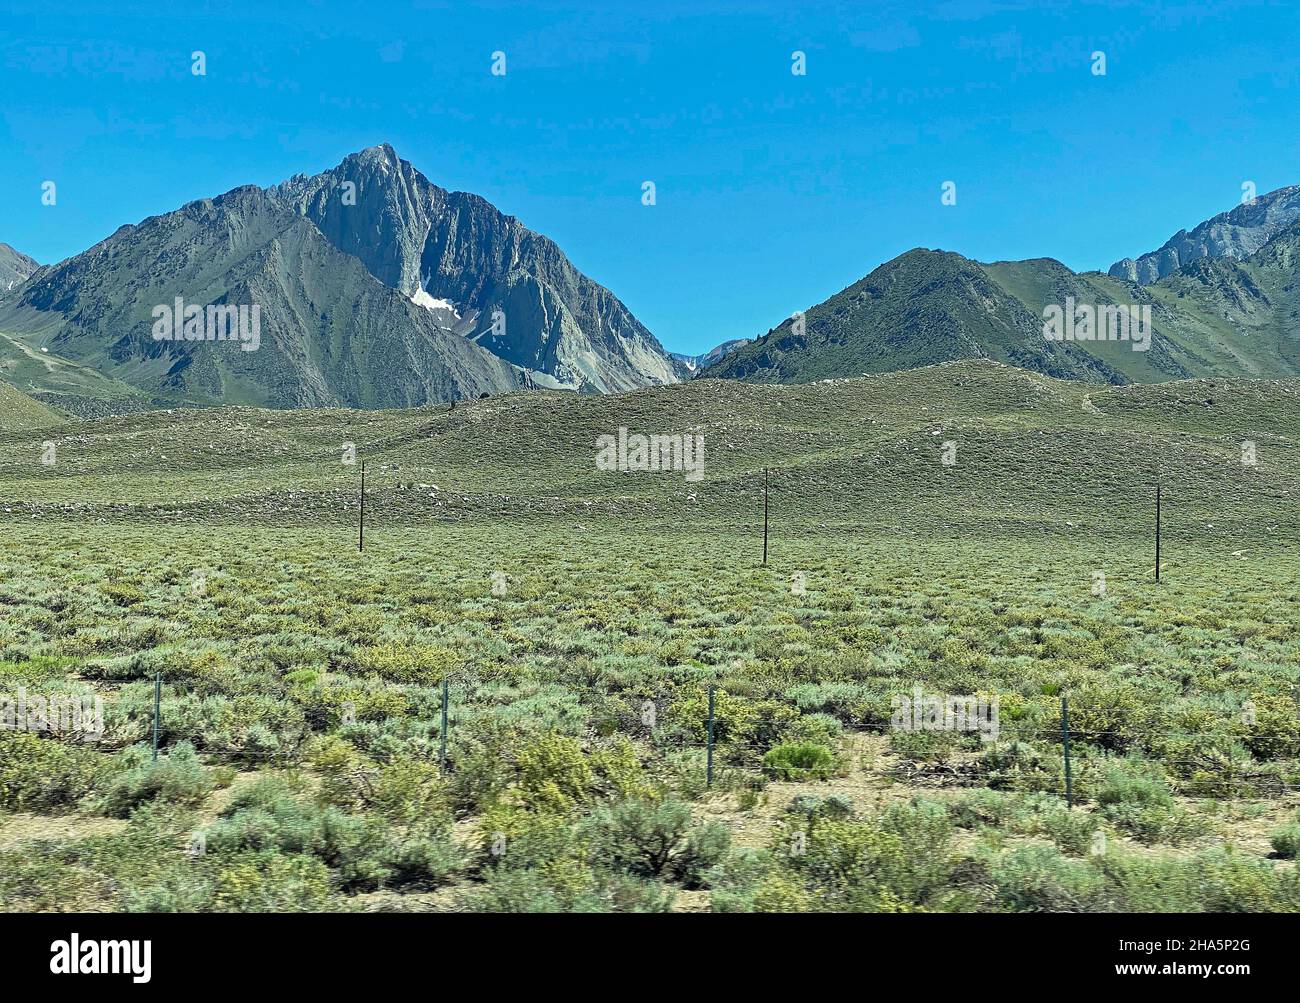 Peaks of Eastern Sierra, California Stock Photo